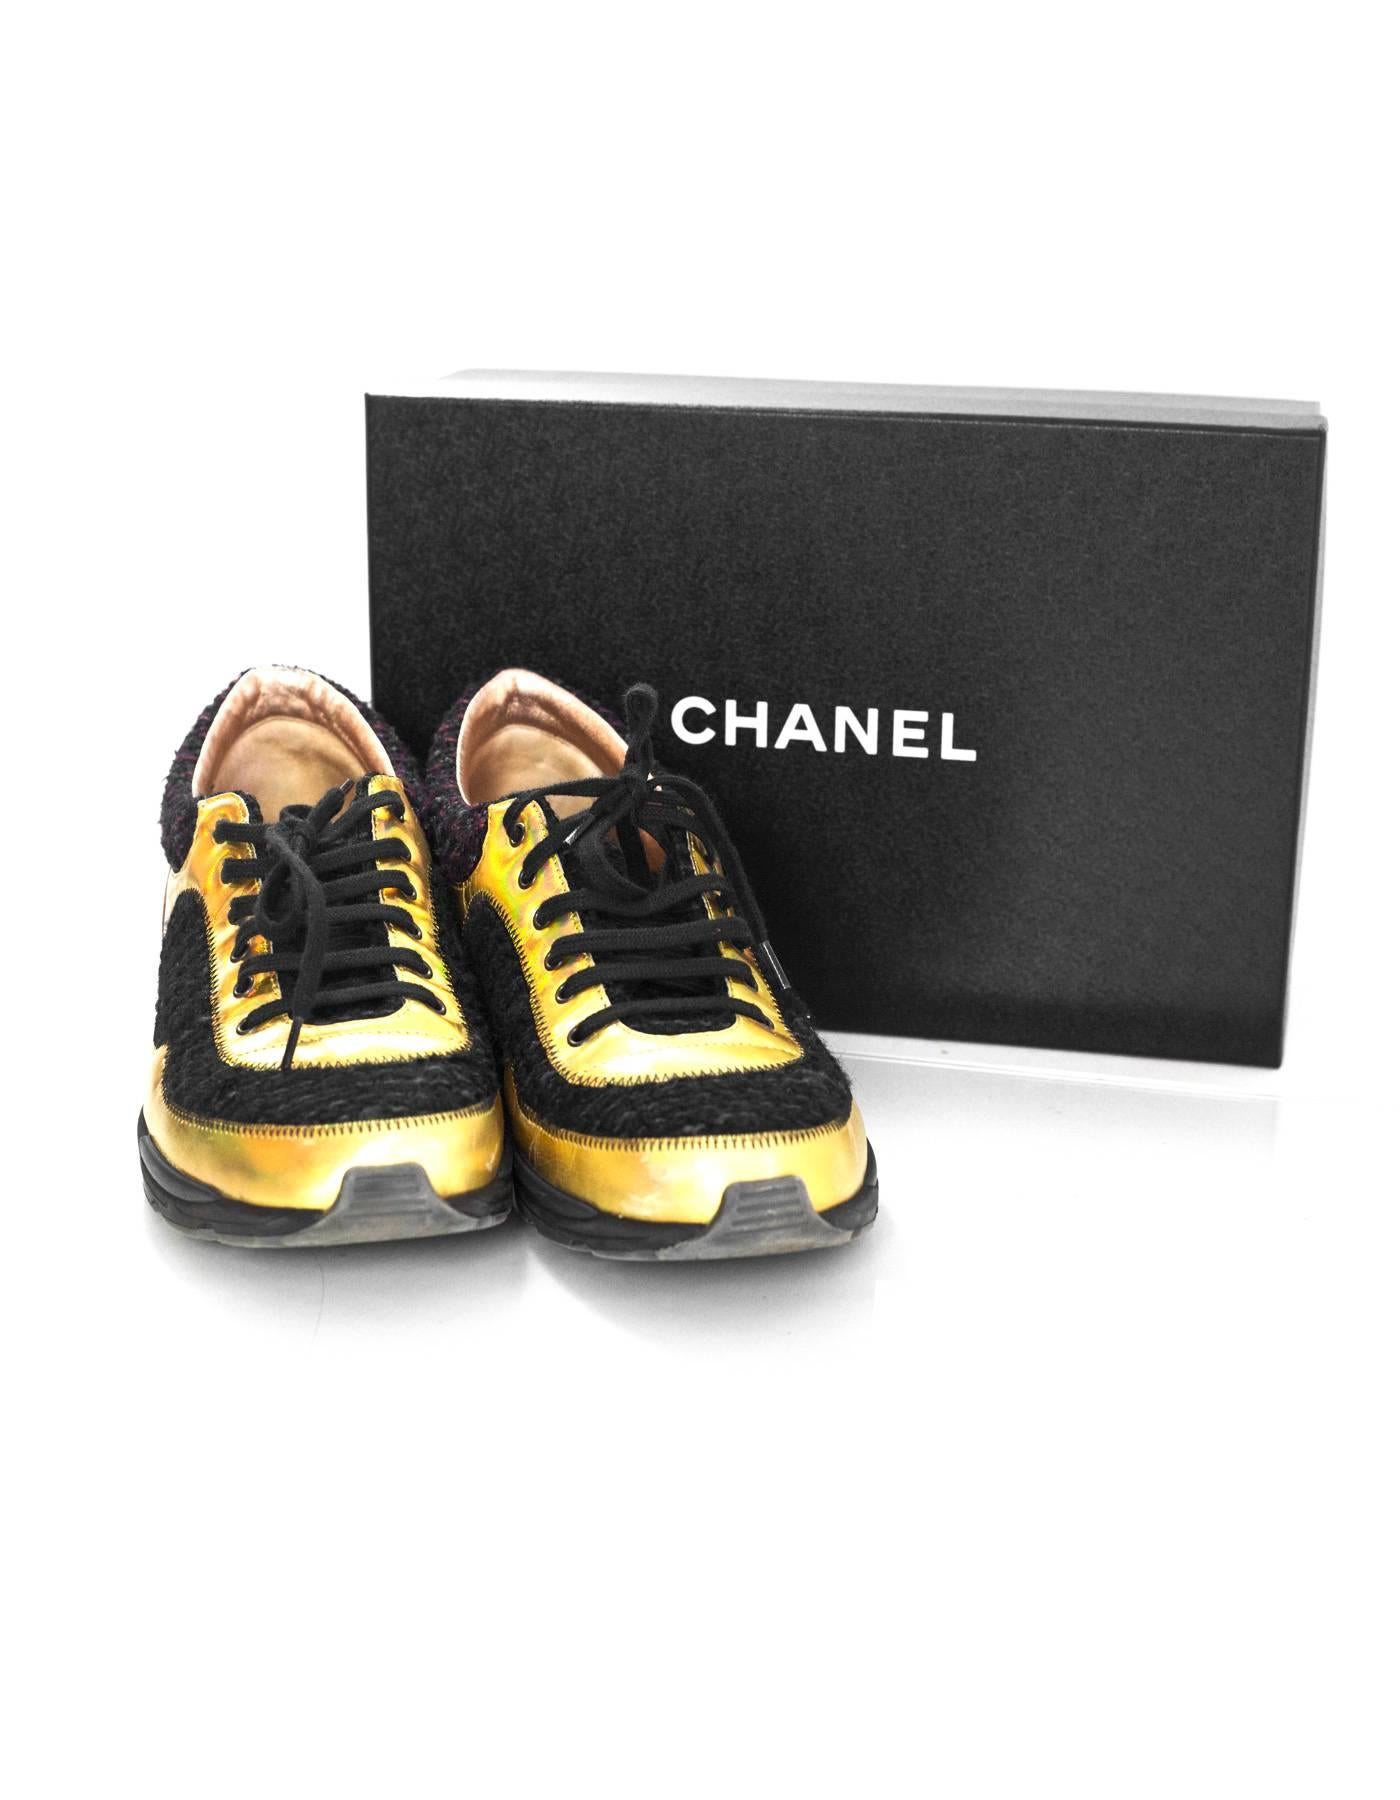 Chanel Fall '14 Runway Black Tweed, Brown Suede & Gold Trainer Sneakers Sz 40 2